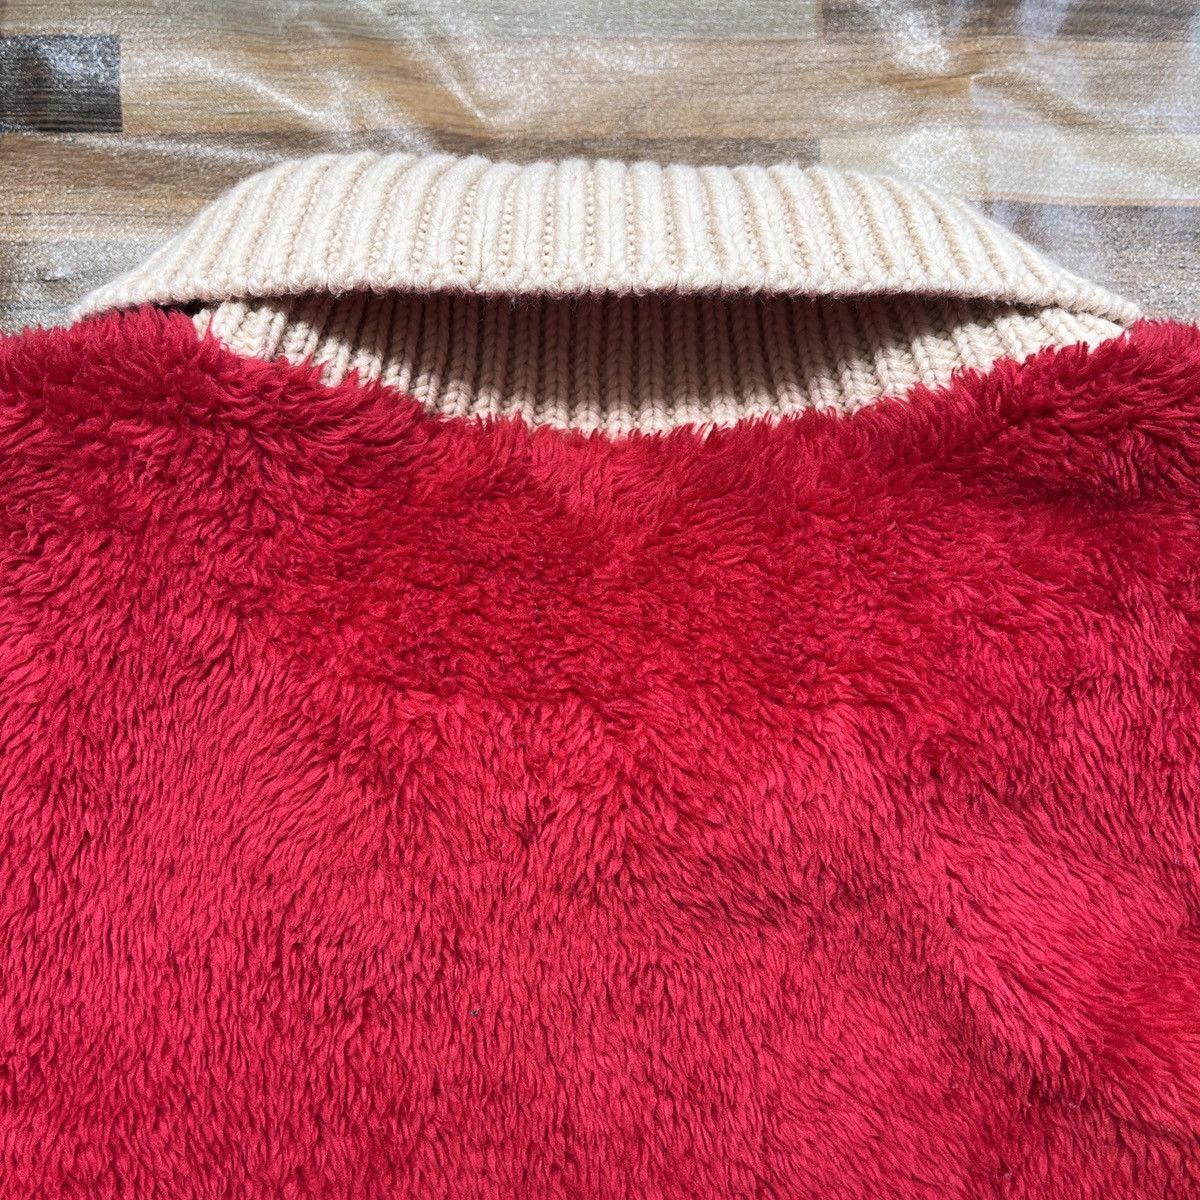 Undercover X Uniqlo Sweater Rare Red Colour - 17